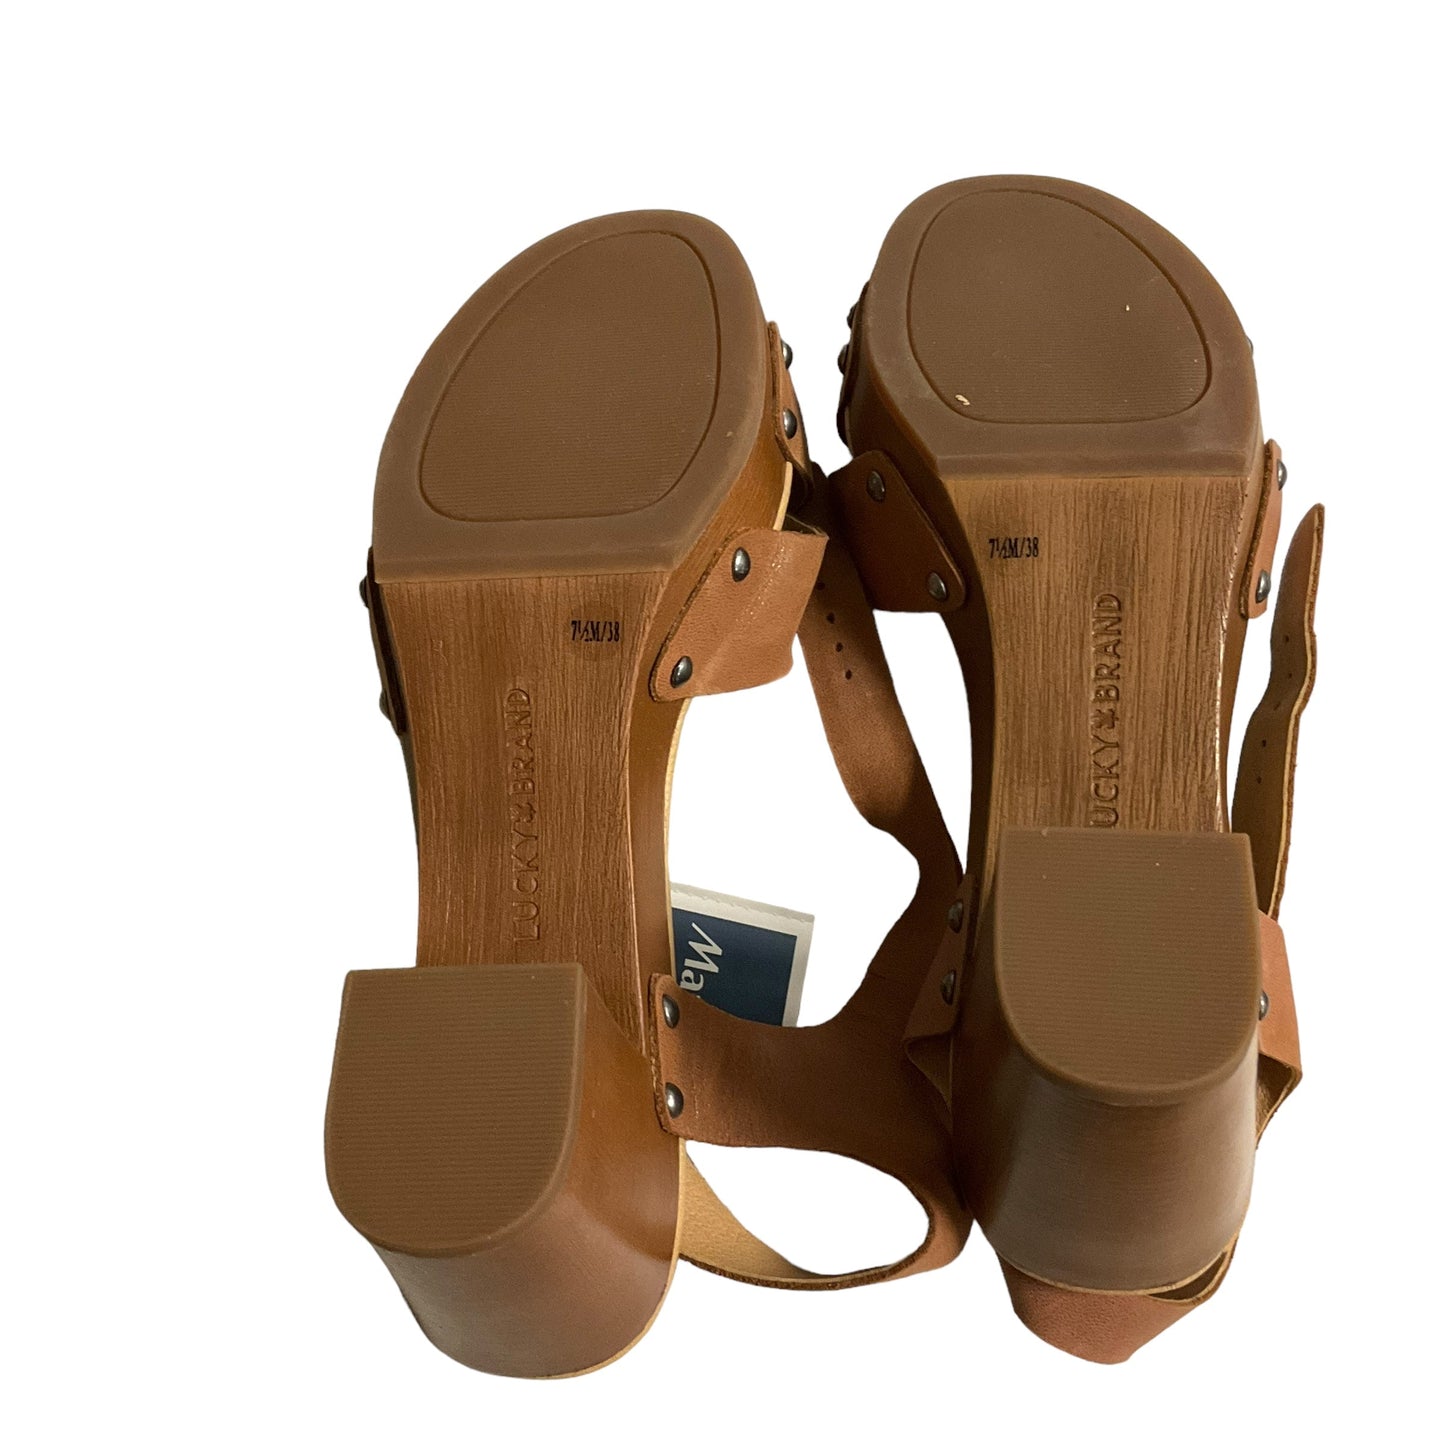 Tan Sandals Heels Block Lucky Brand, Size 7.5